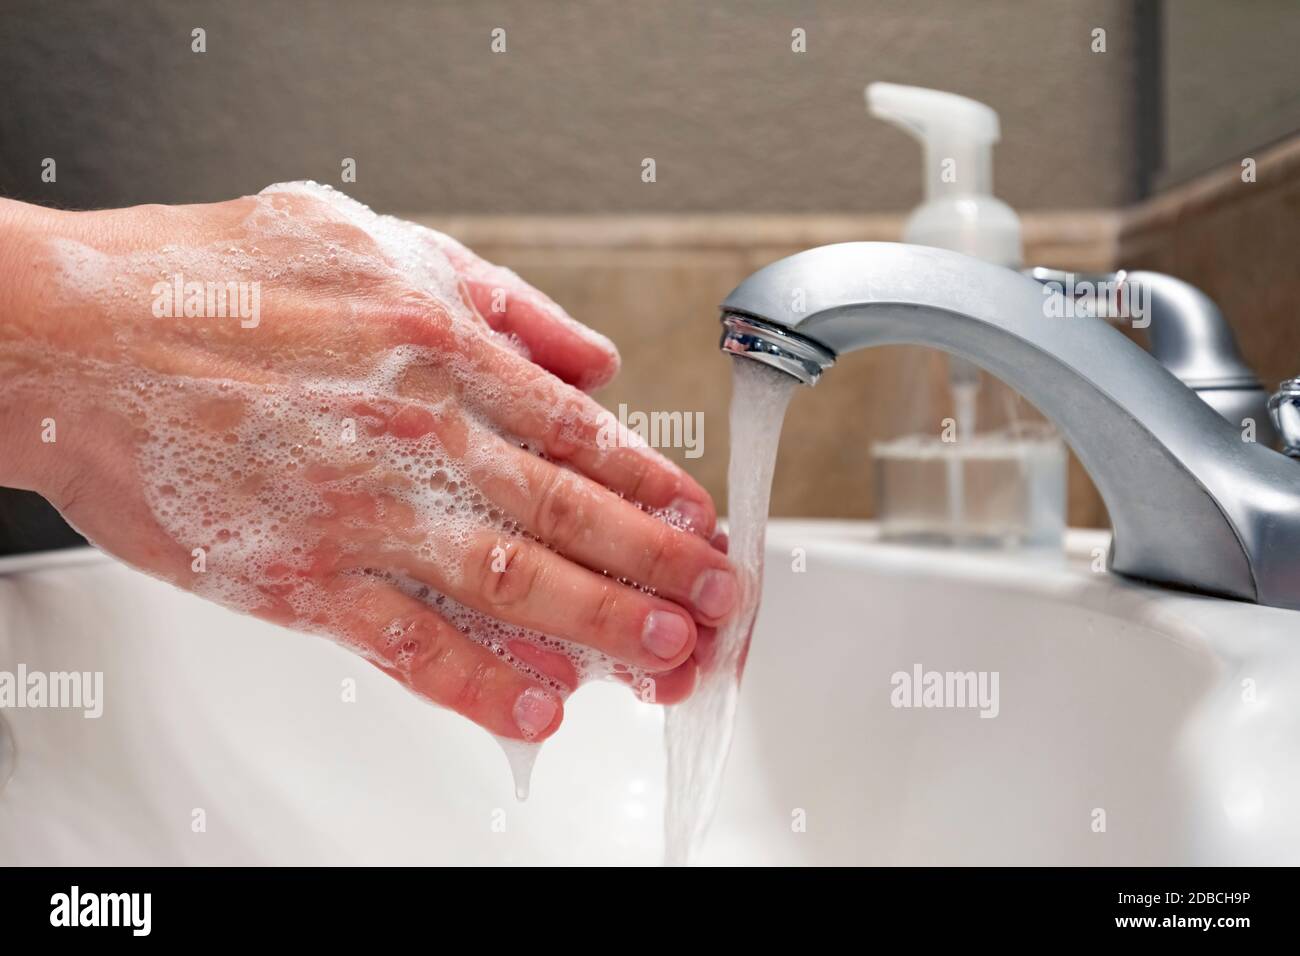 Lavando le mani con sapone e acqua nel lavello del bagno, protezione contro virus e batteri, igiene per rimanere in buona salute Foto Stock